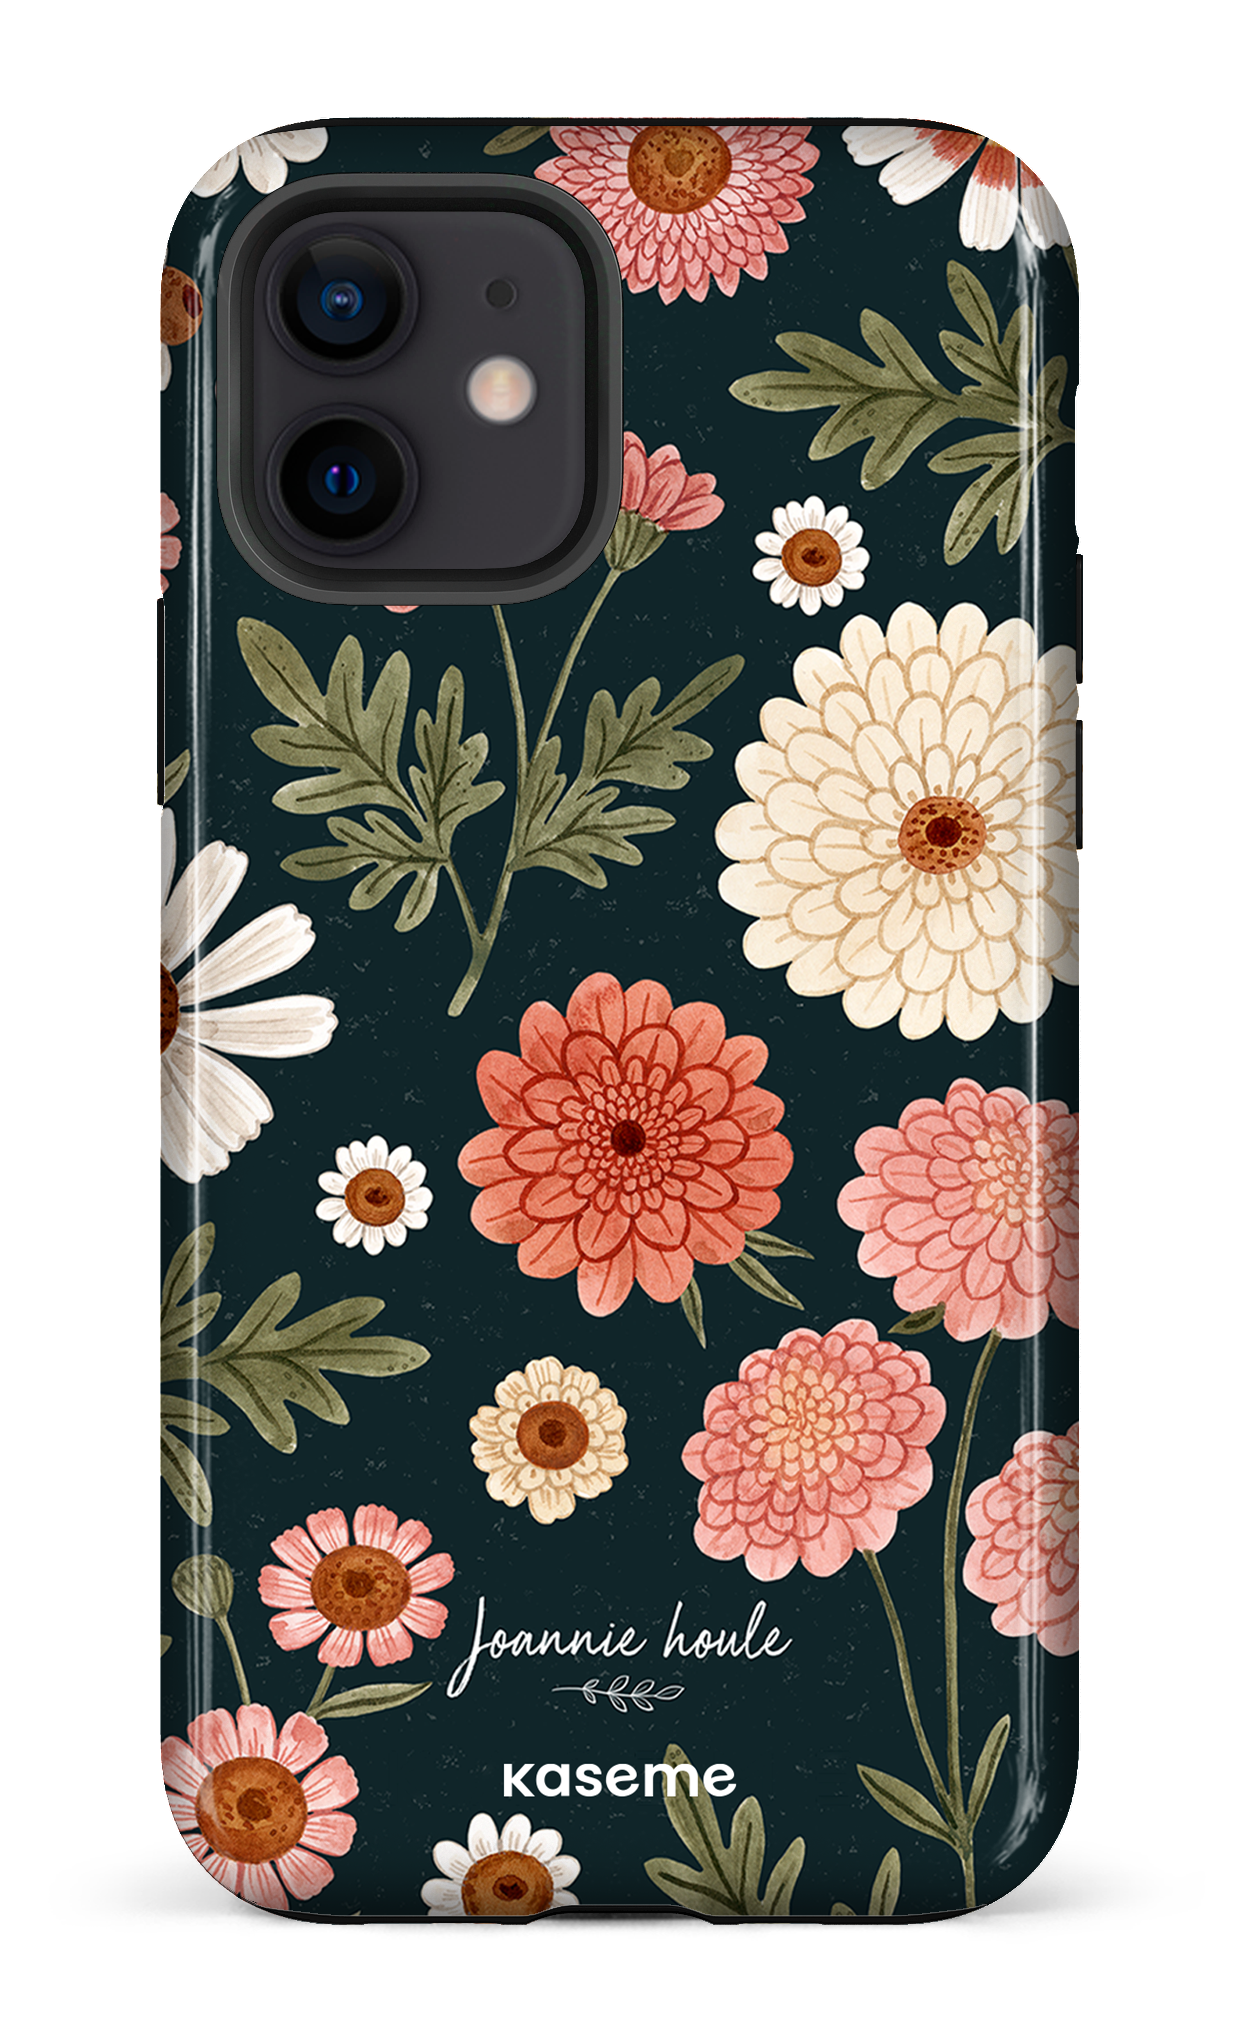 Chrysanthemums by Joannie Houle - iPhone 12